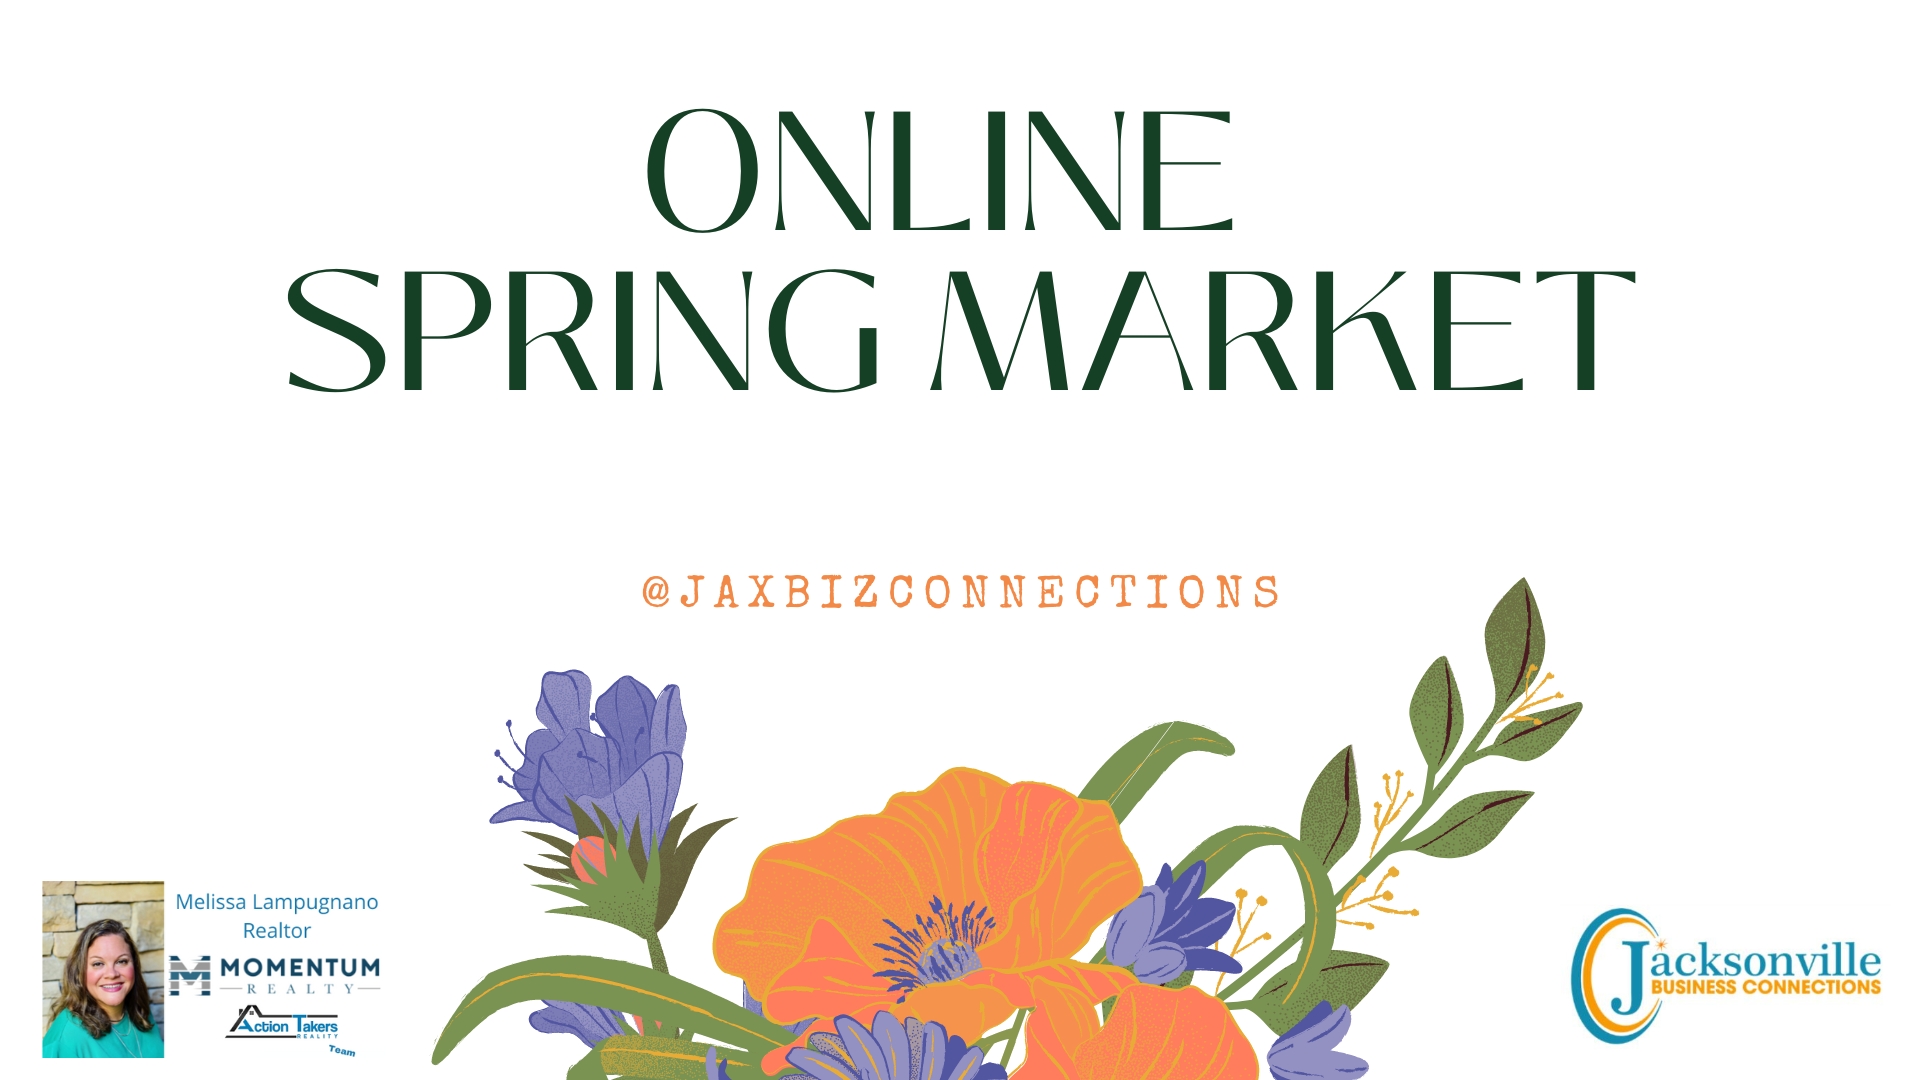 Online Spring Market cover image